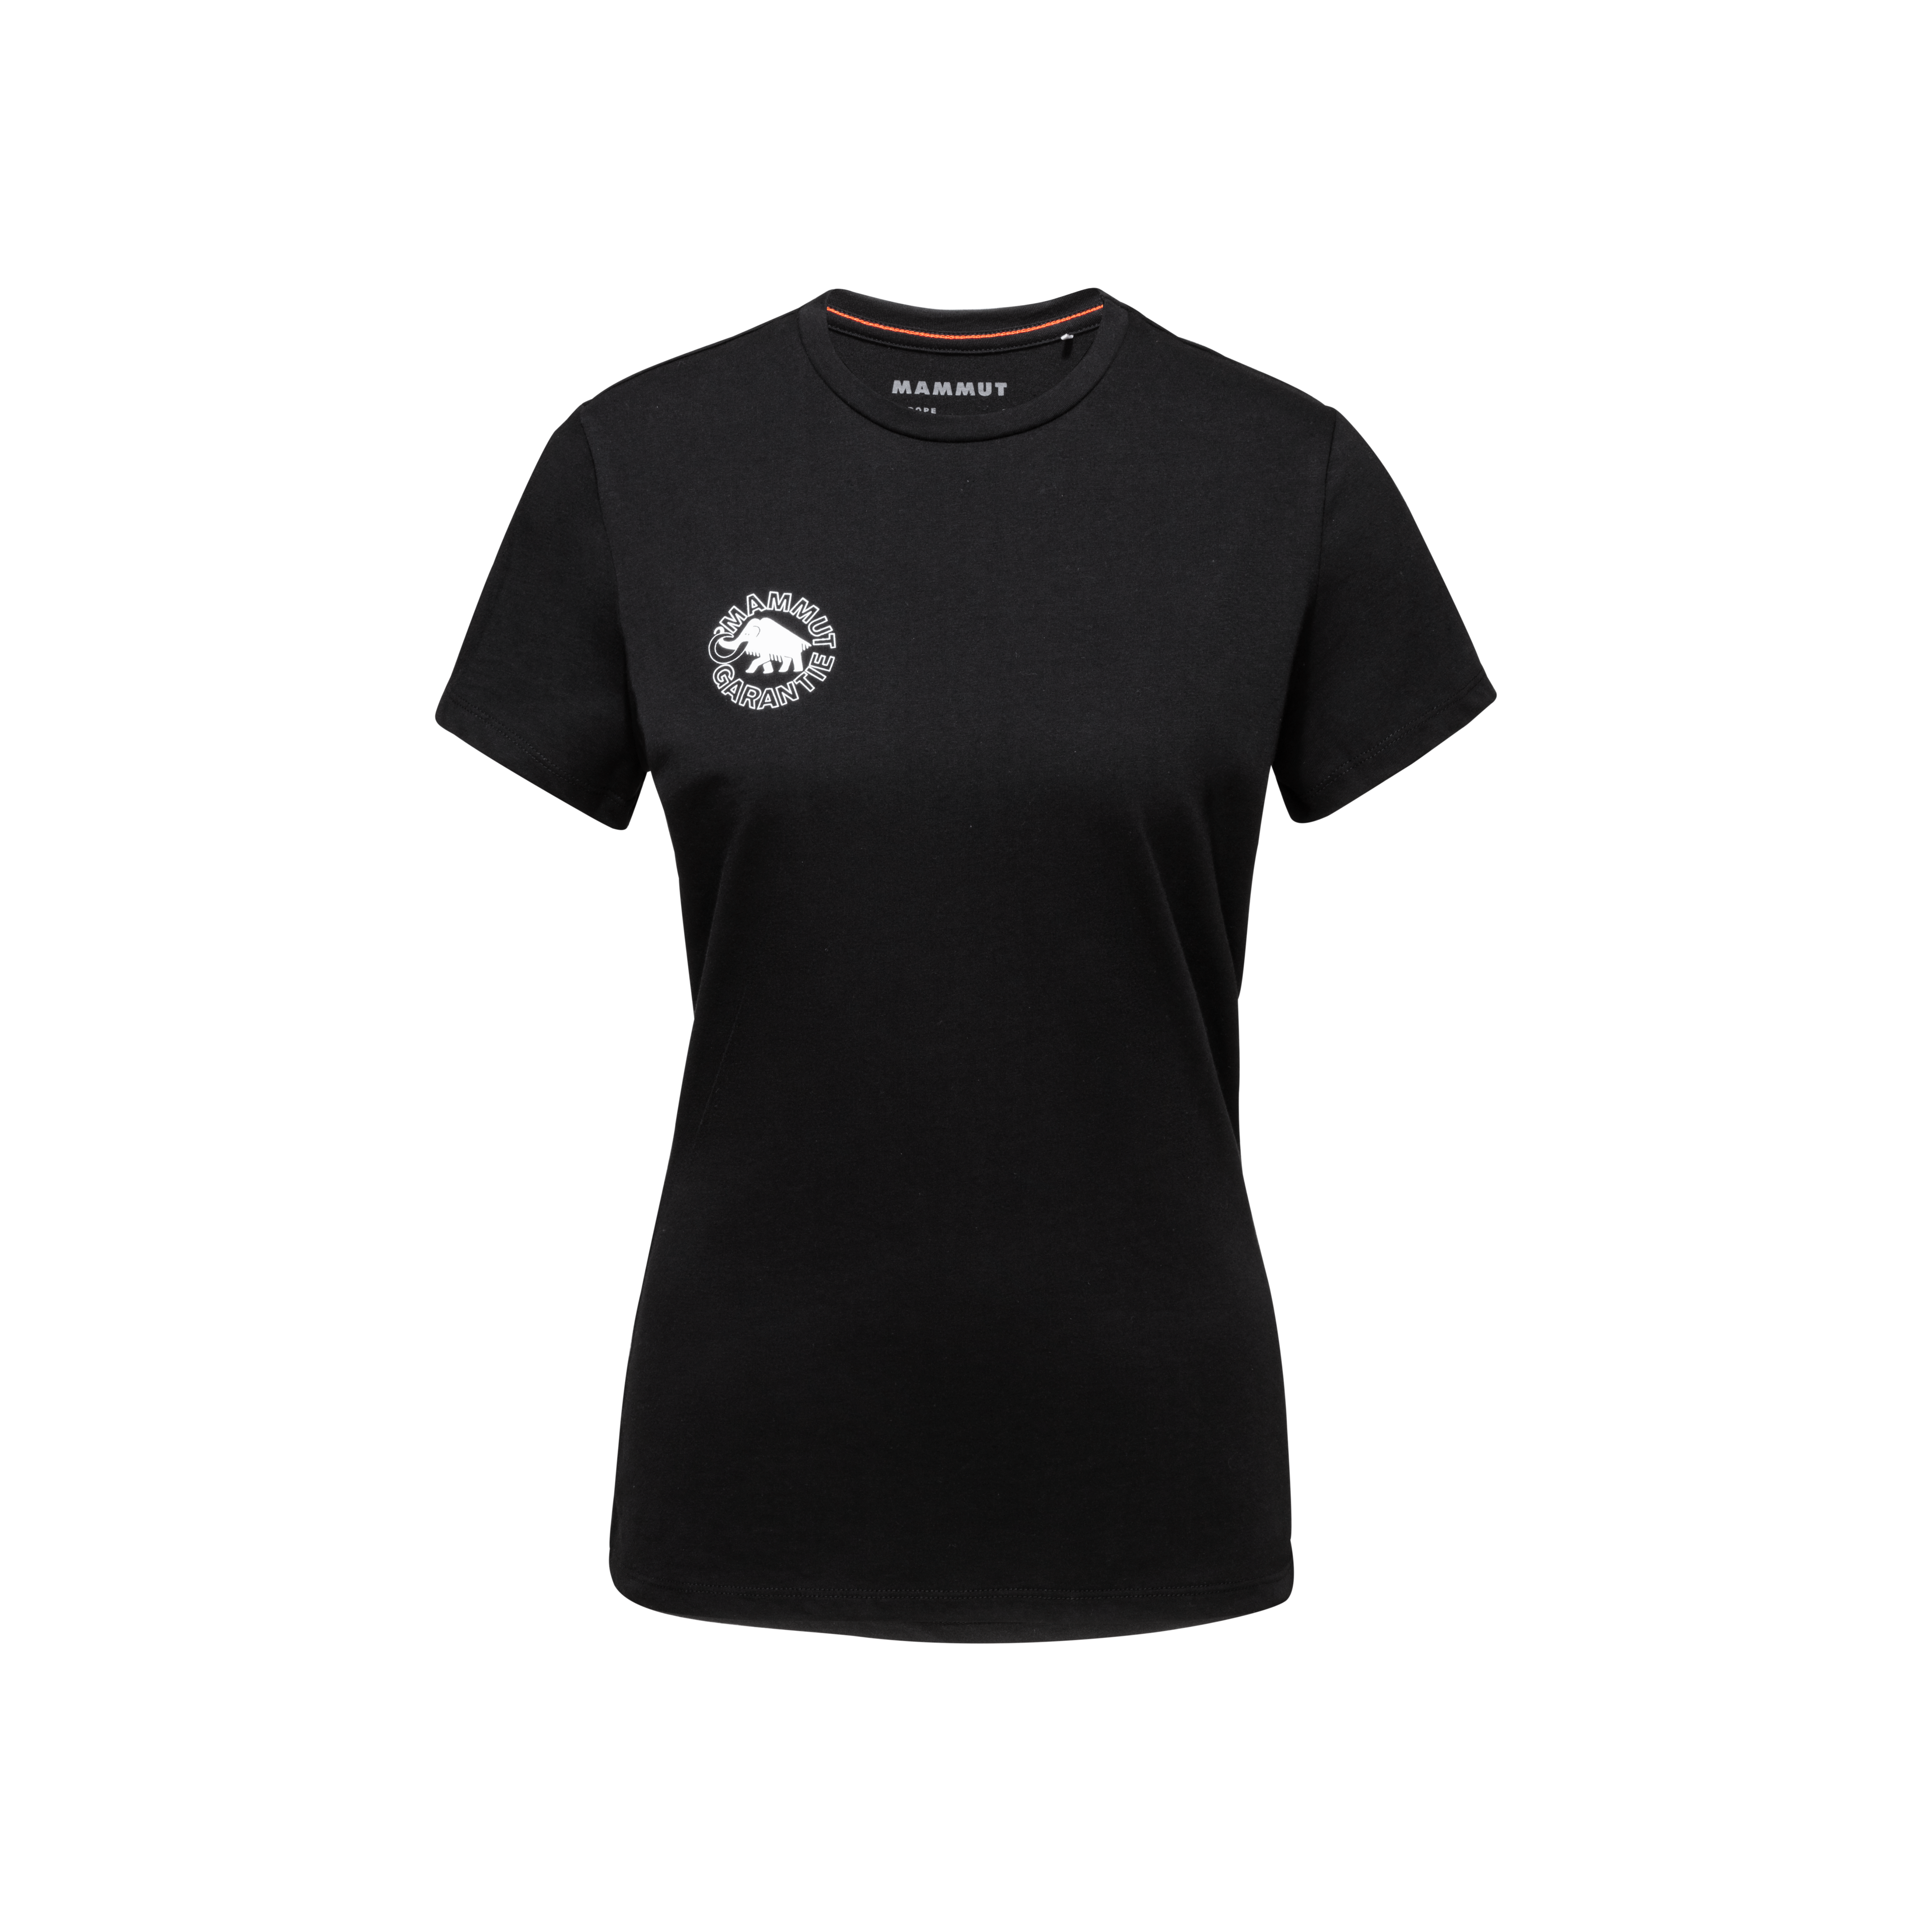 Seile T-Shirt Women Heritage - black, M thumbnail